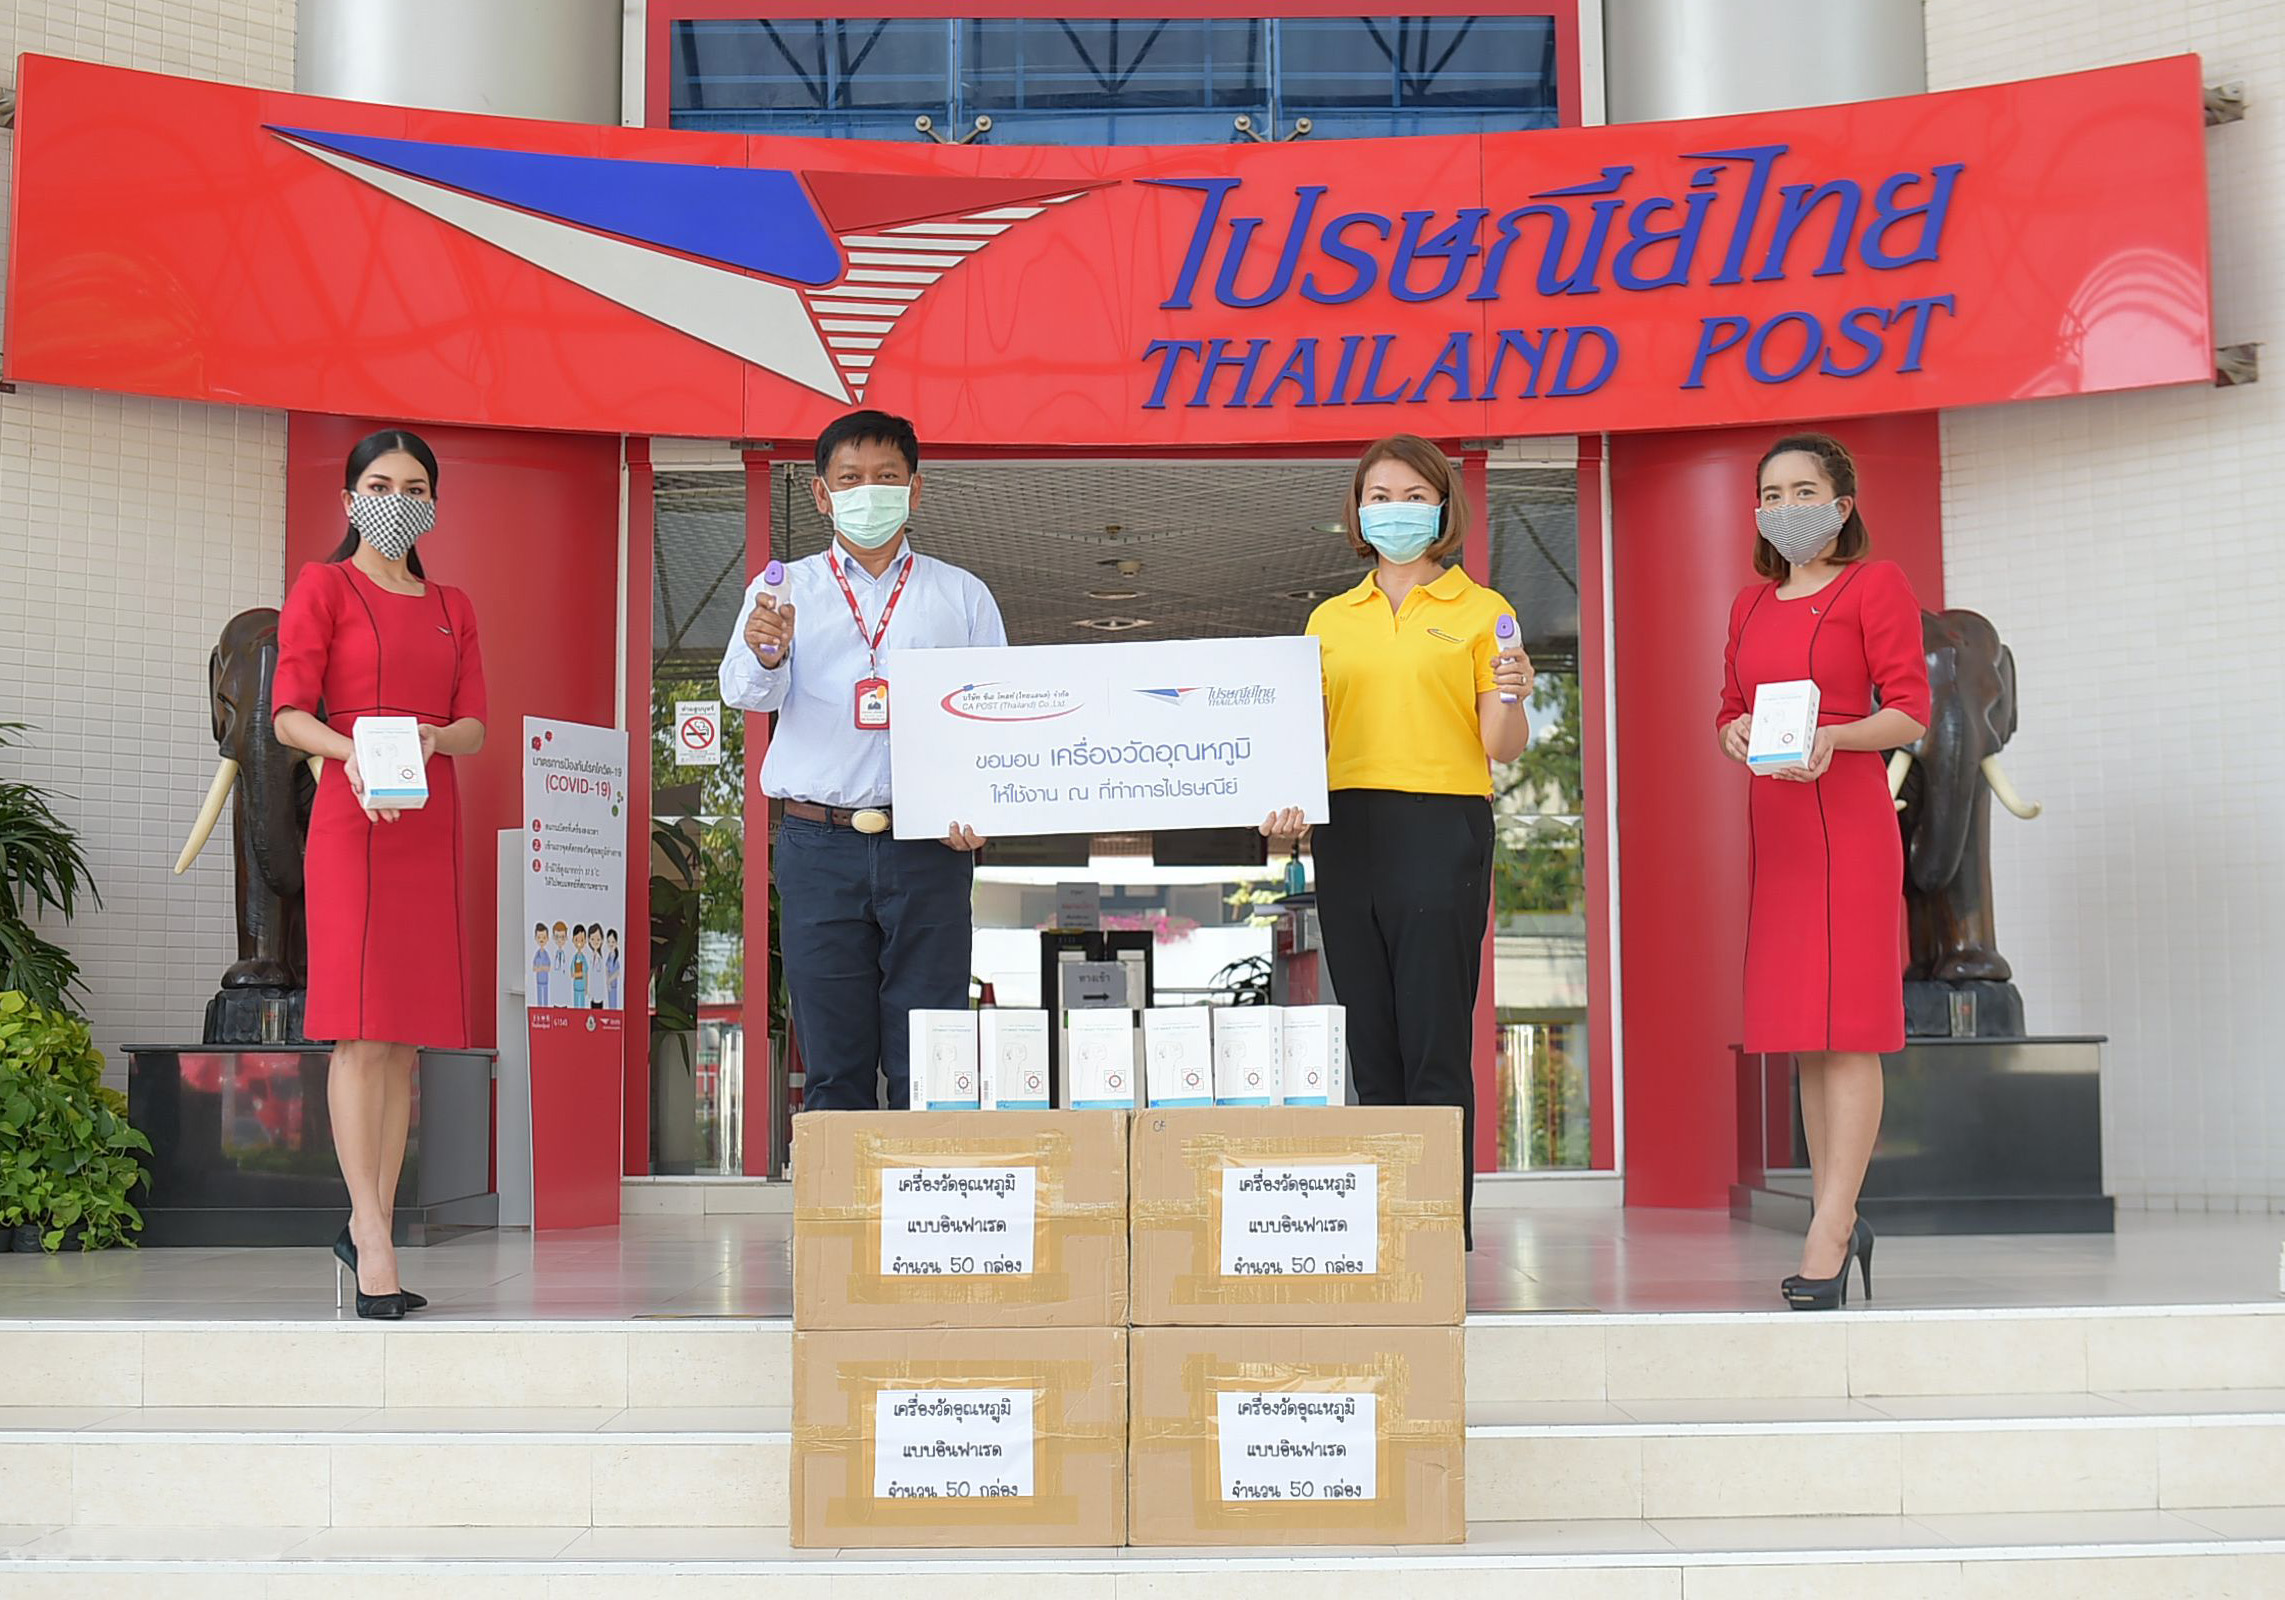 ภาพข่าว: ไปรษณีย์ไทย รับมอบเครื่องวัดอุณหภูมิ เพื่อใช้คัดกรองในศูนย์บริการ